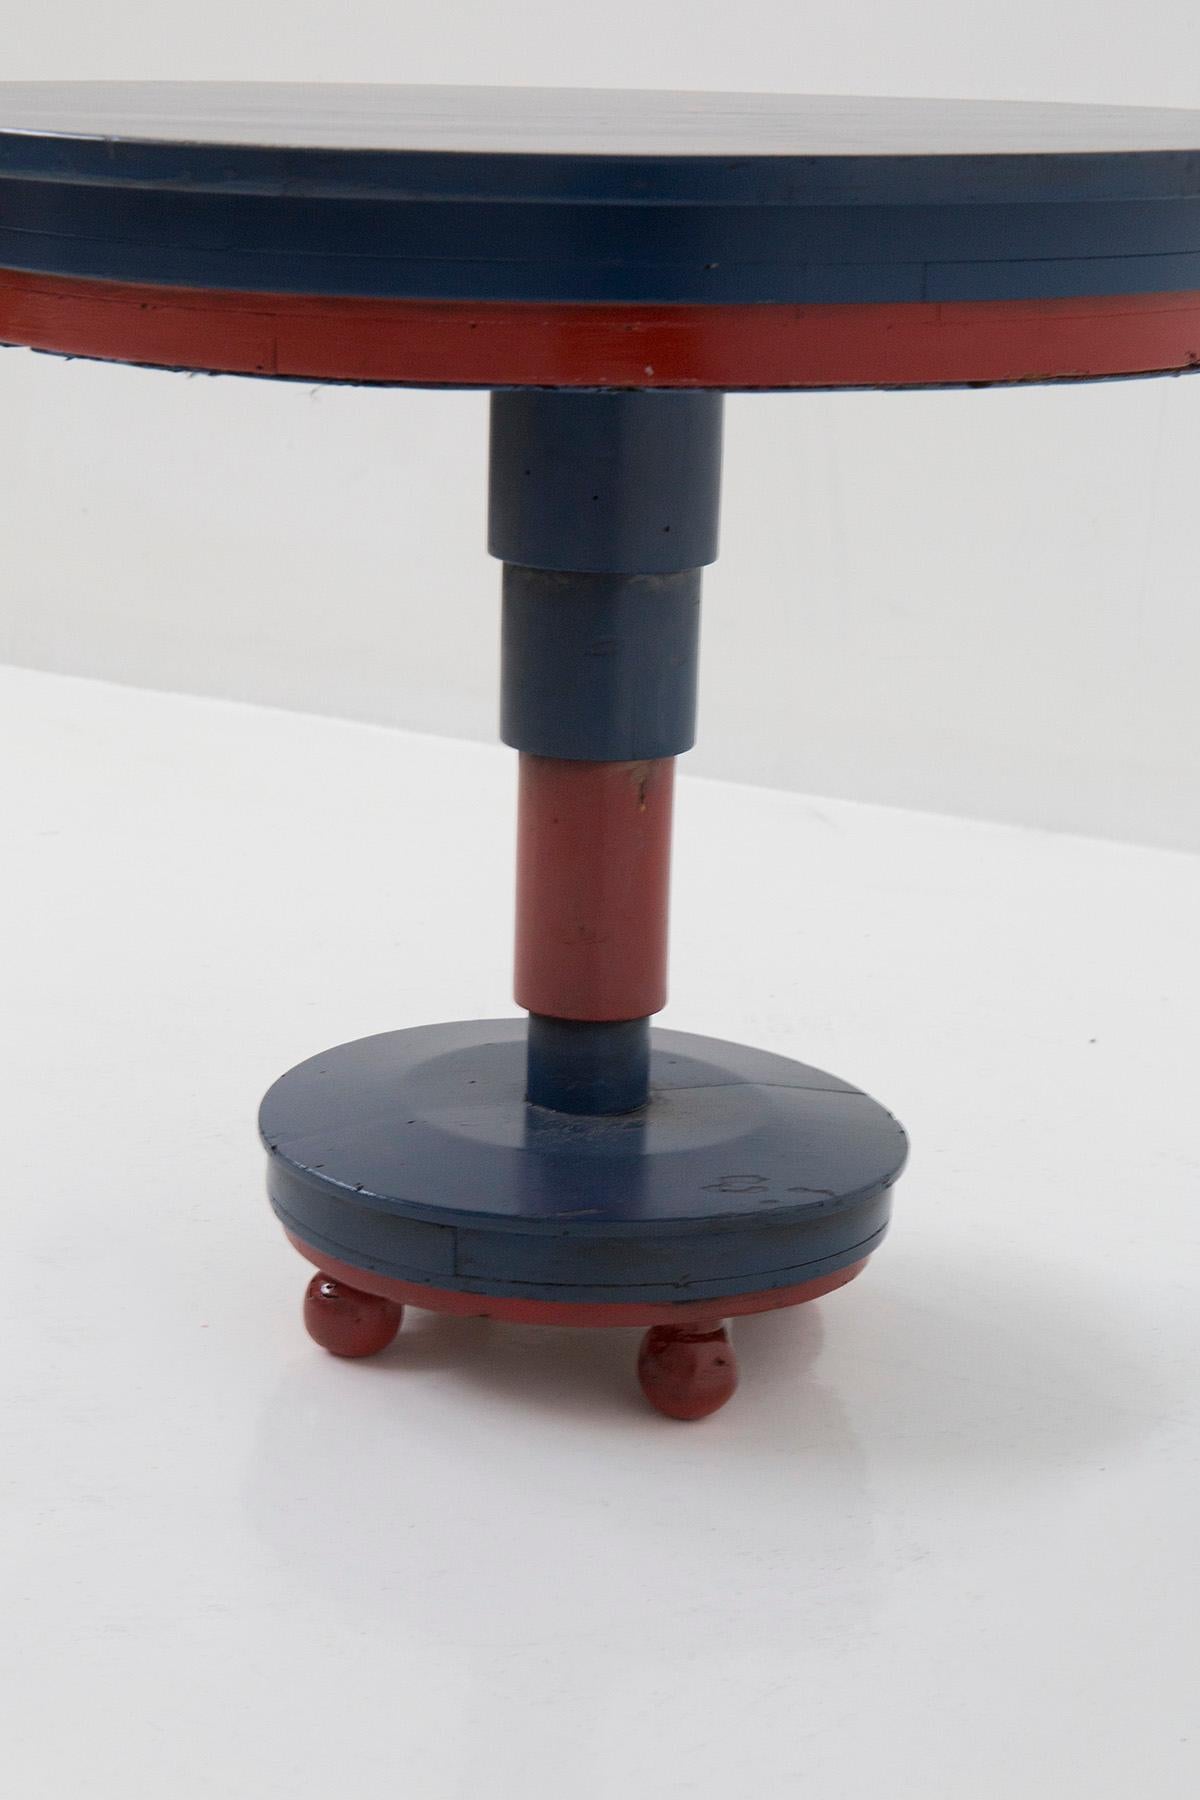 Admirez l'hypnotique table basse italienne attribuée à l'habileté créative de Luigi Colombo Fillìa, créée vers 1920-1930.

Laissez-vous séduire par cette création extraordinaire, réalisée avec passion et finesse. Fabriquée en bois peint dans des